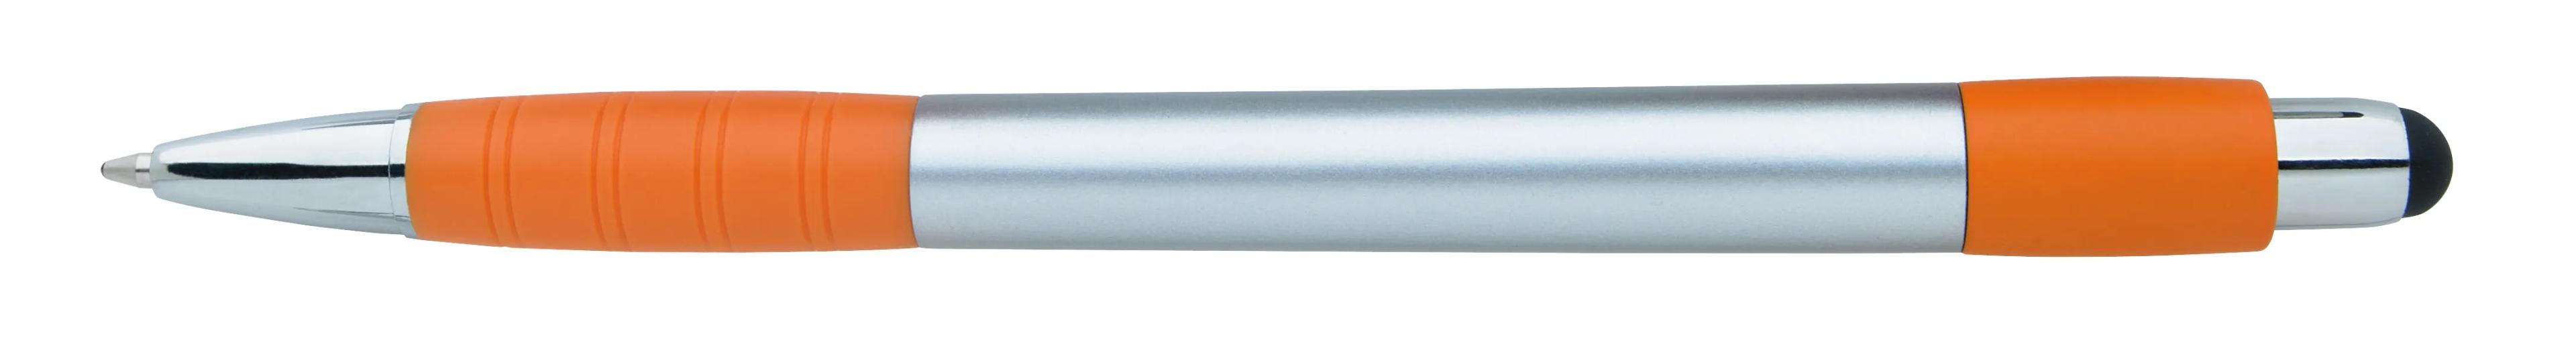 Silver Element Stylus Pen 12 of 53